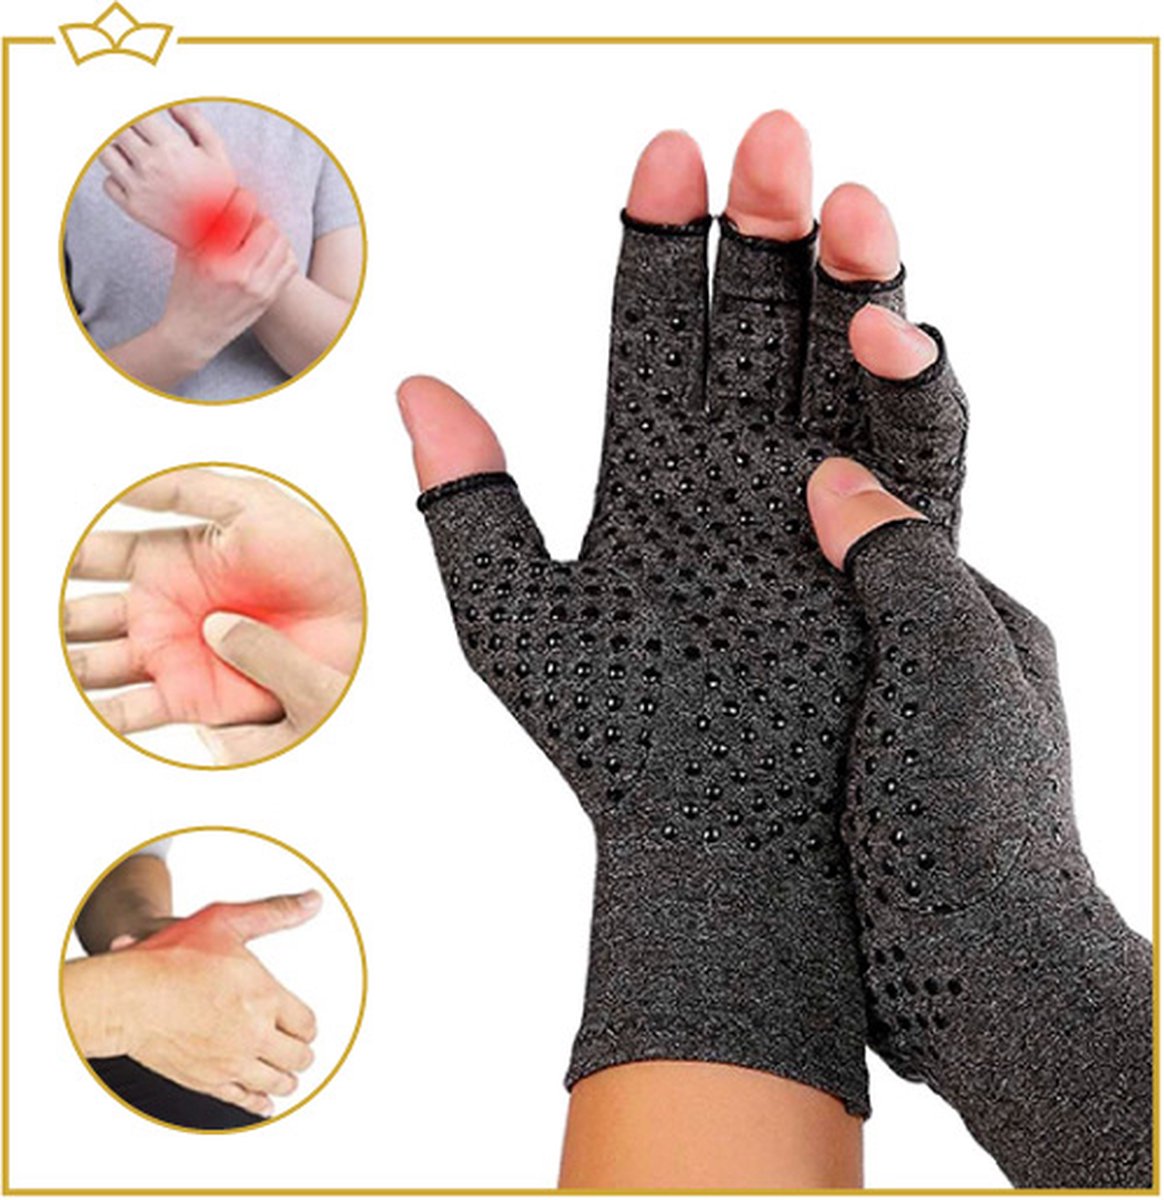 ATTREZZO® Compressie handschoenen - Grijs - Maat XL - Anti slip - One size - Ideaal voor patiënten van Reuma - Artritis - Artrose